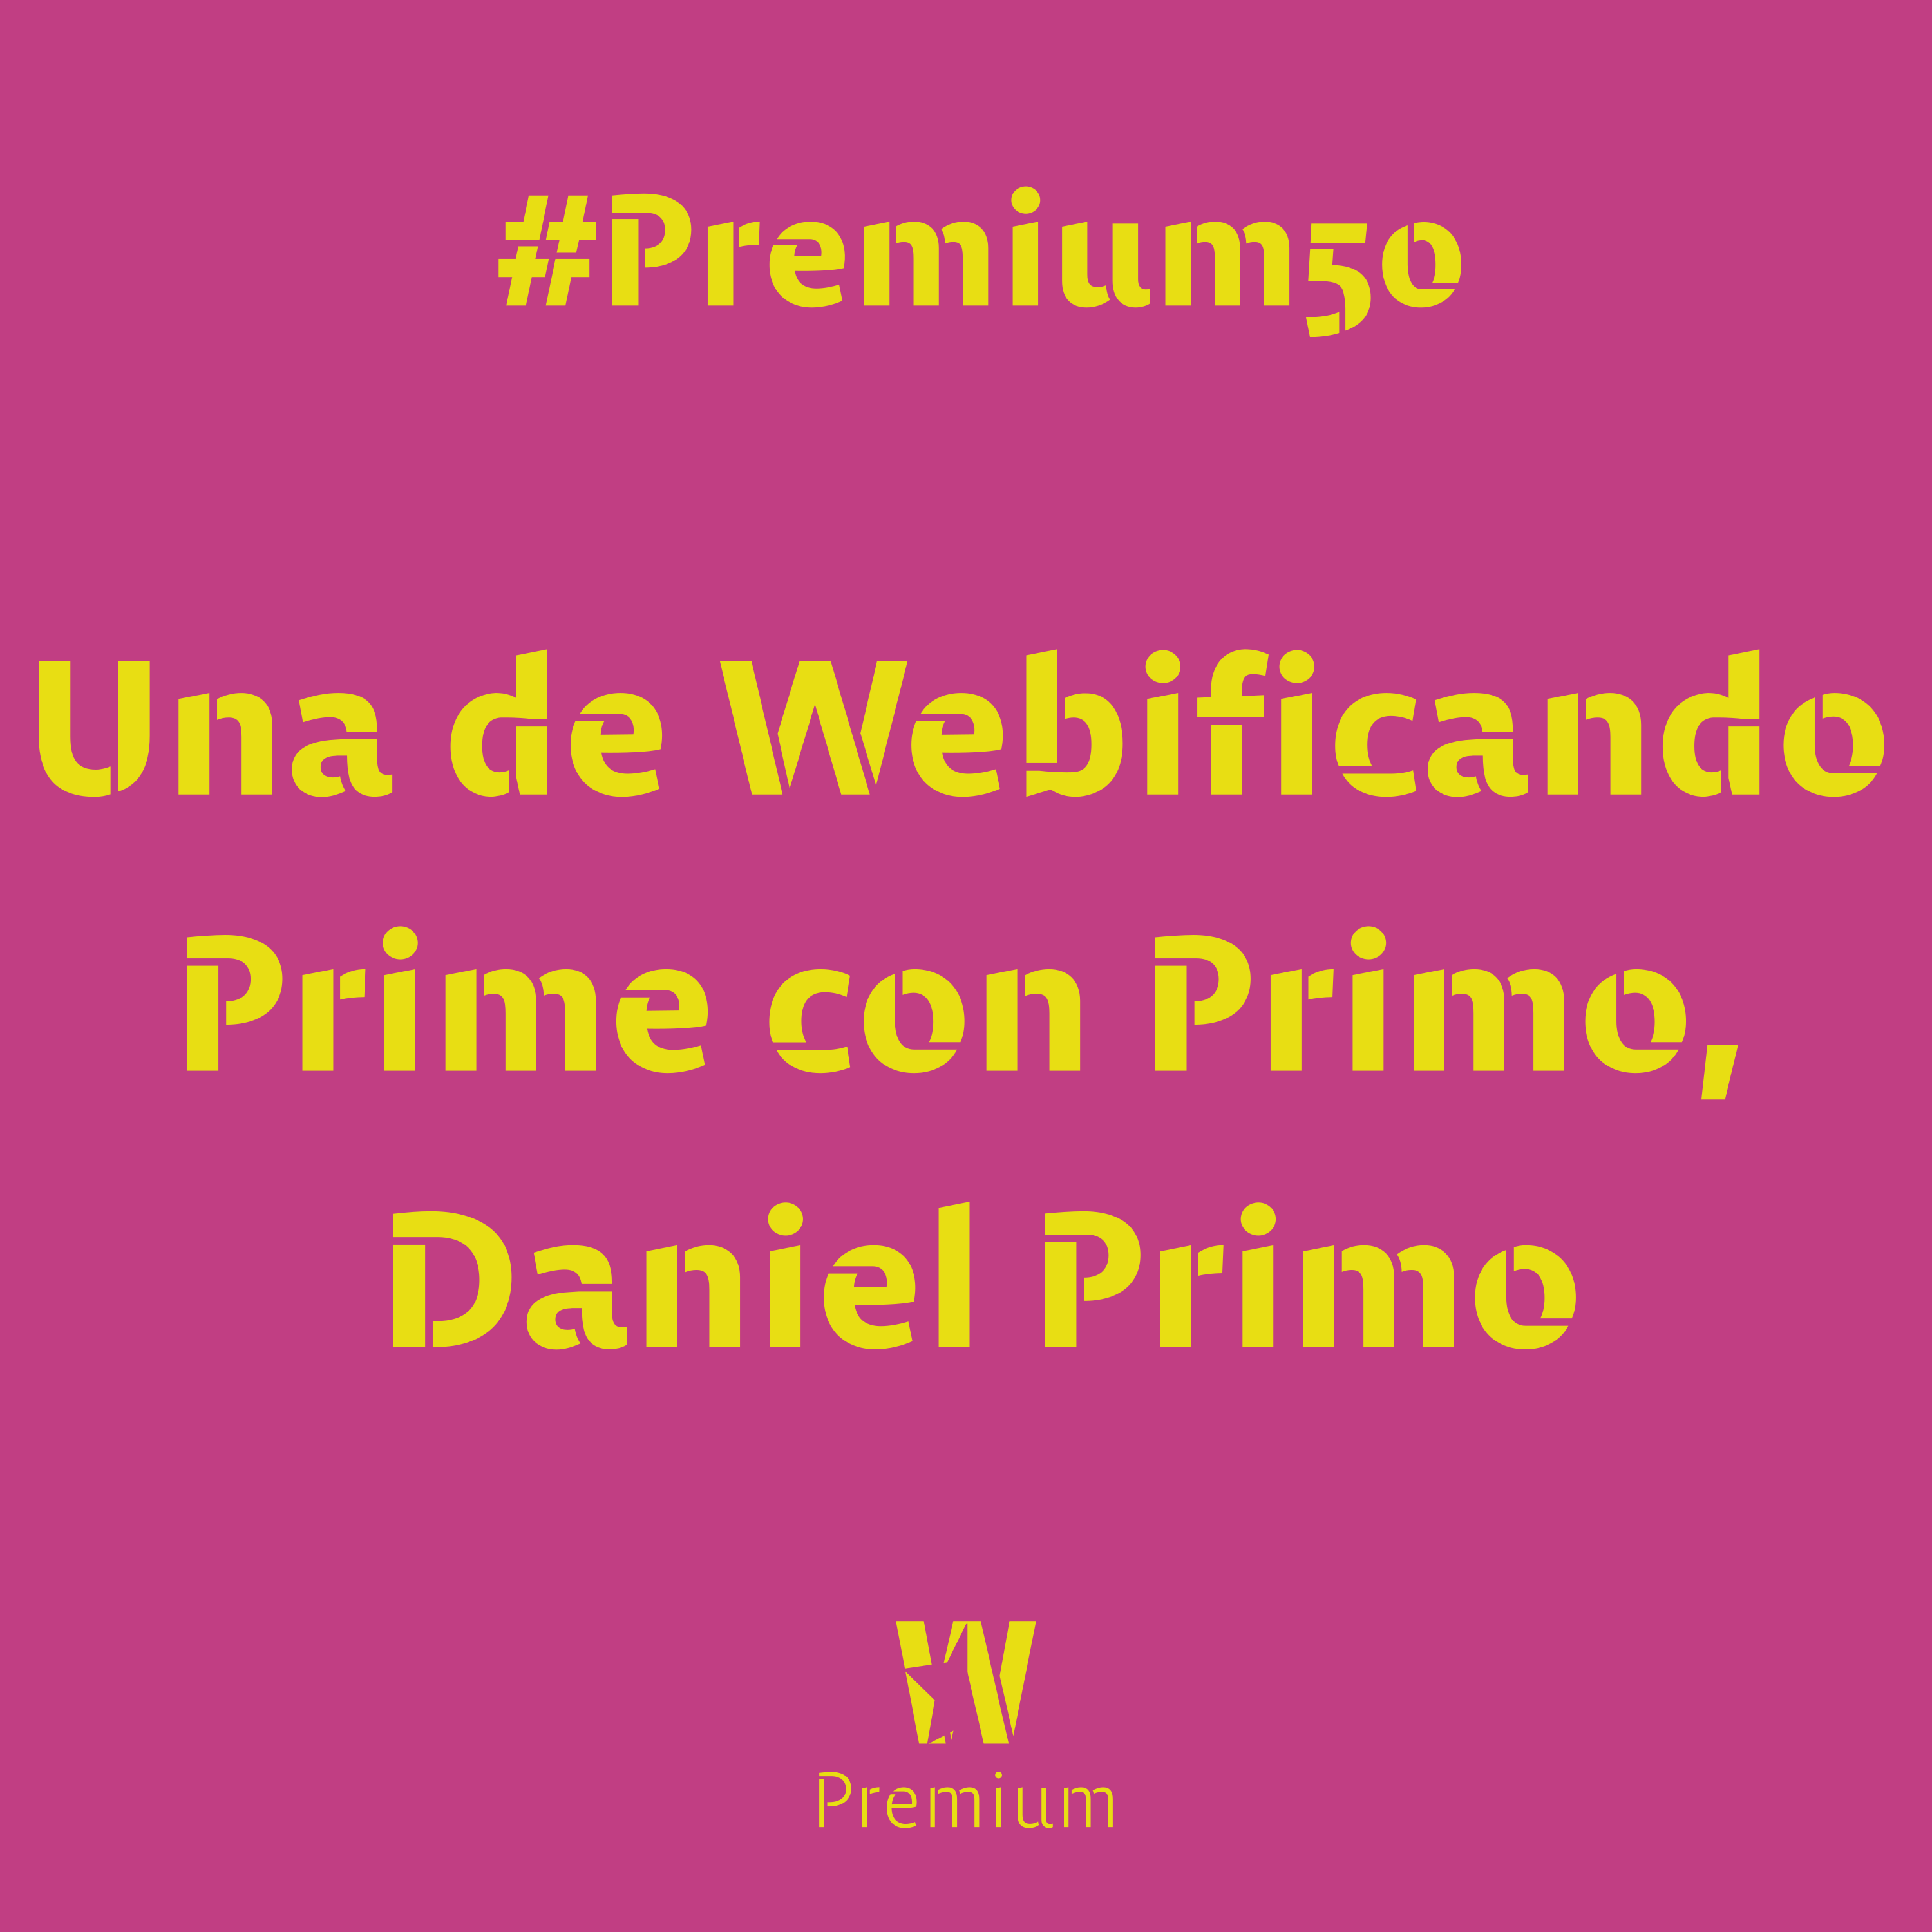 #Premium50 - Una de Webificando Prime con Primo, Daniel Primo